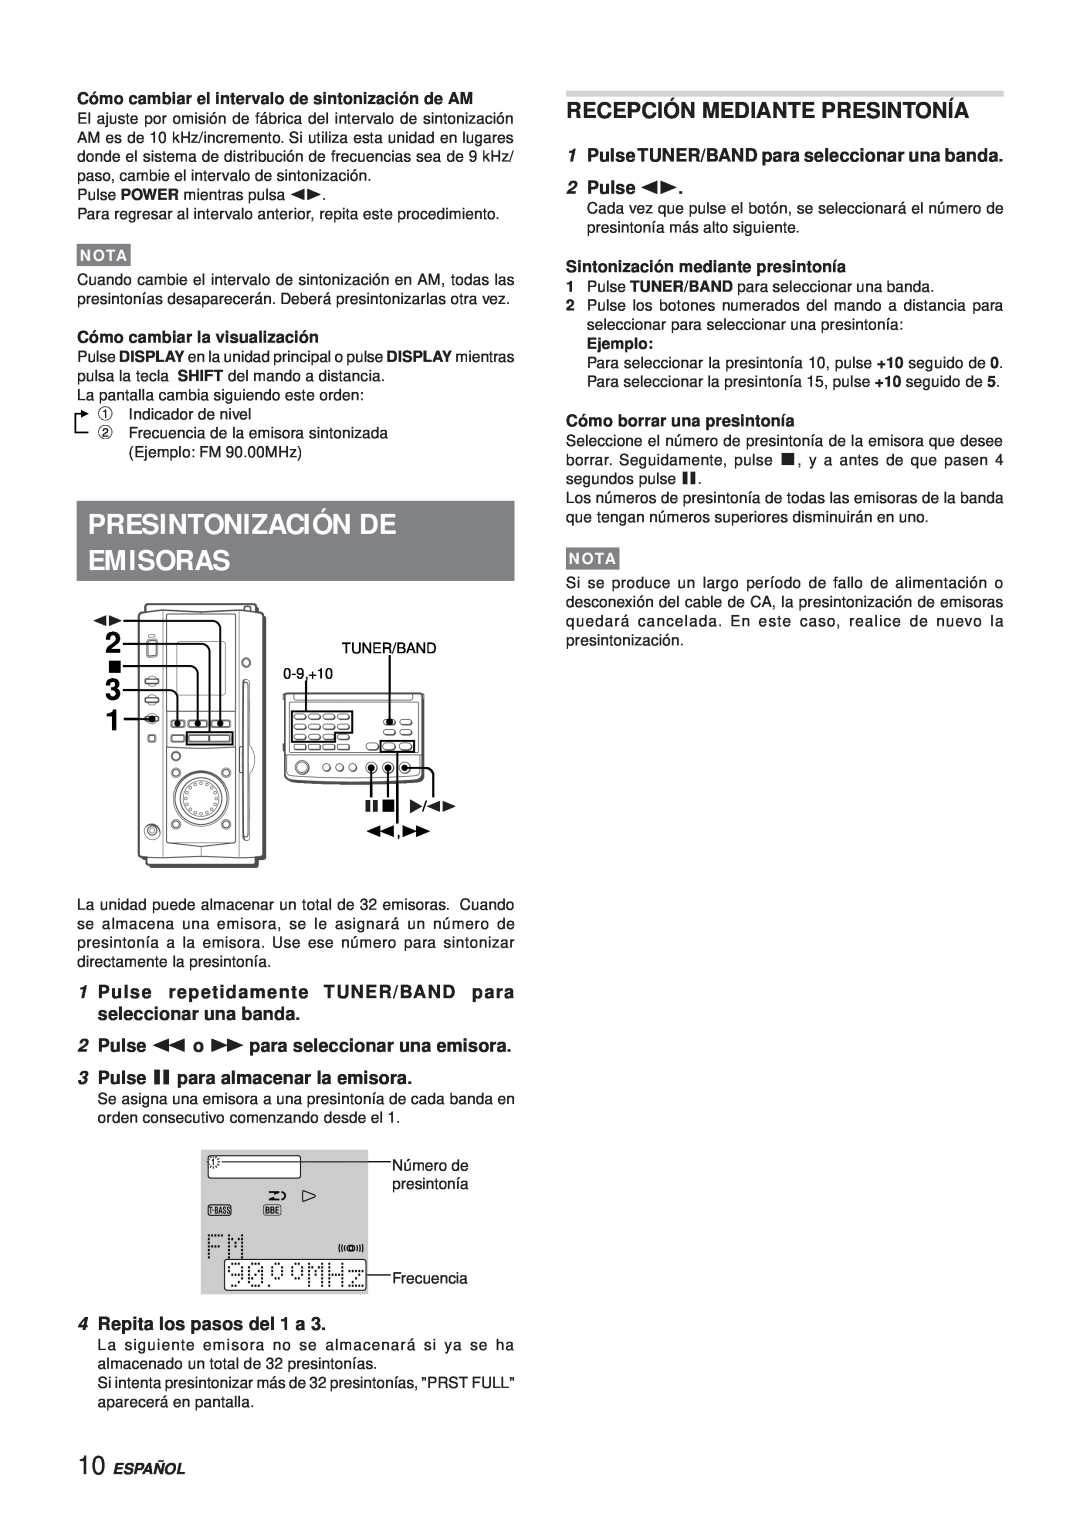 Aiwa XR-MS3 Presintonización De Emisoras, Recepción Mediante Presintonía, Pulse apara almacenar la emisora, Español, Nota 